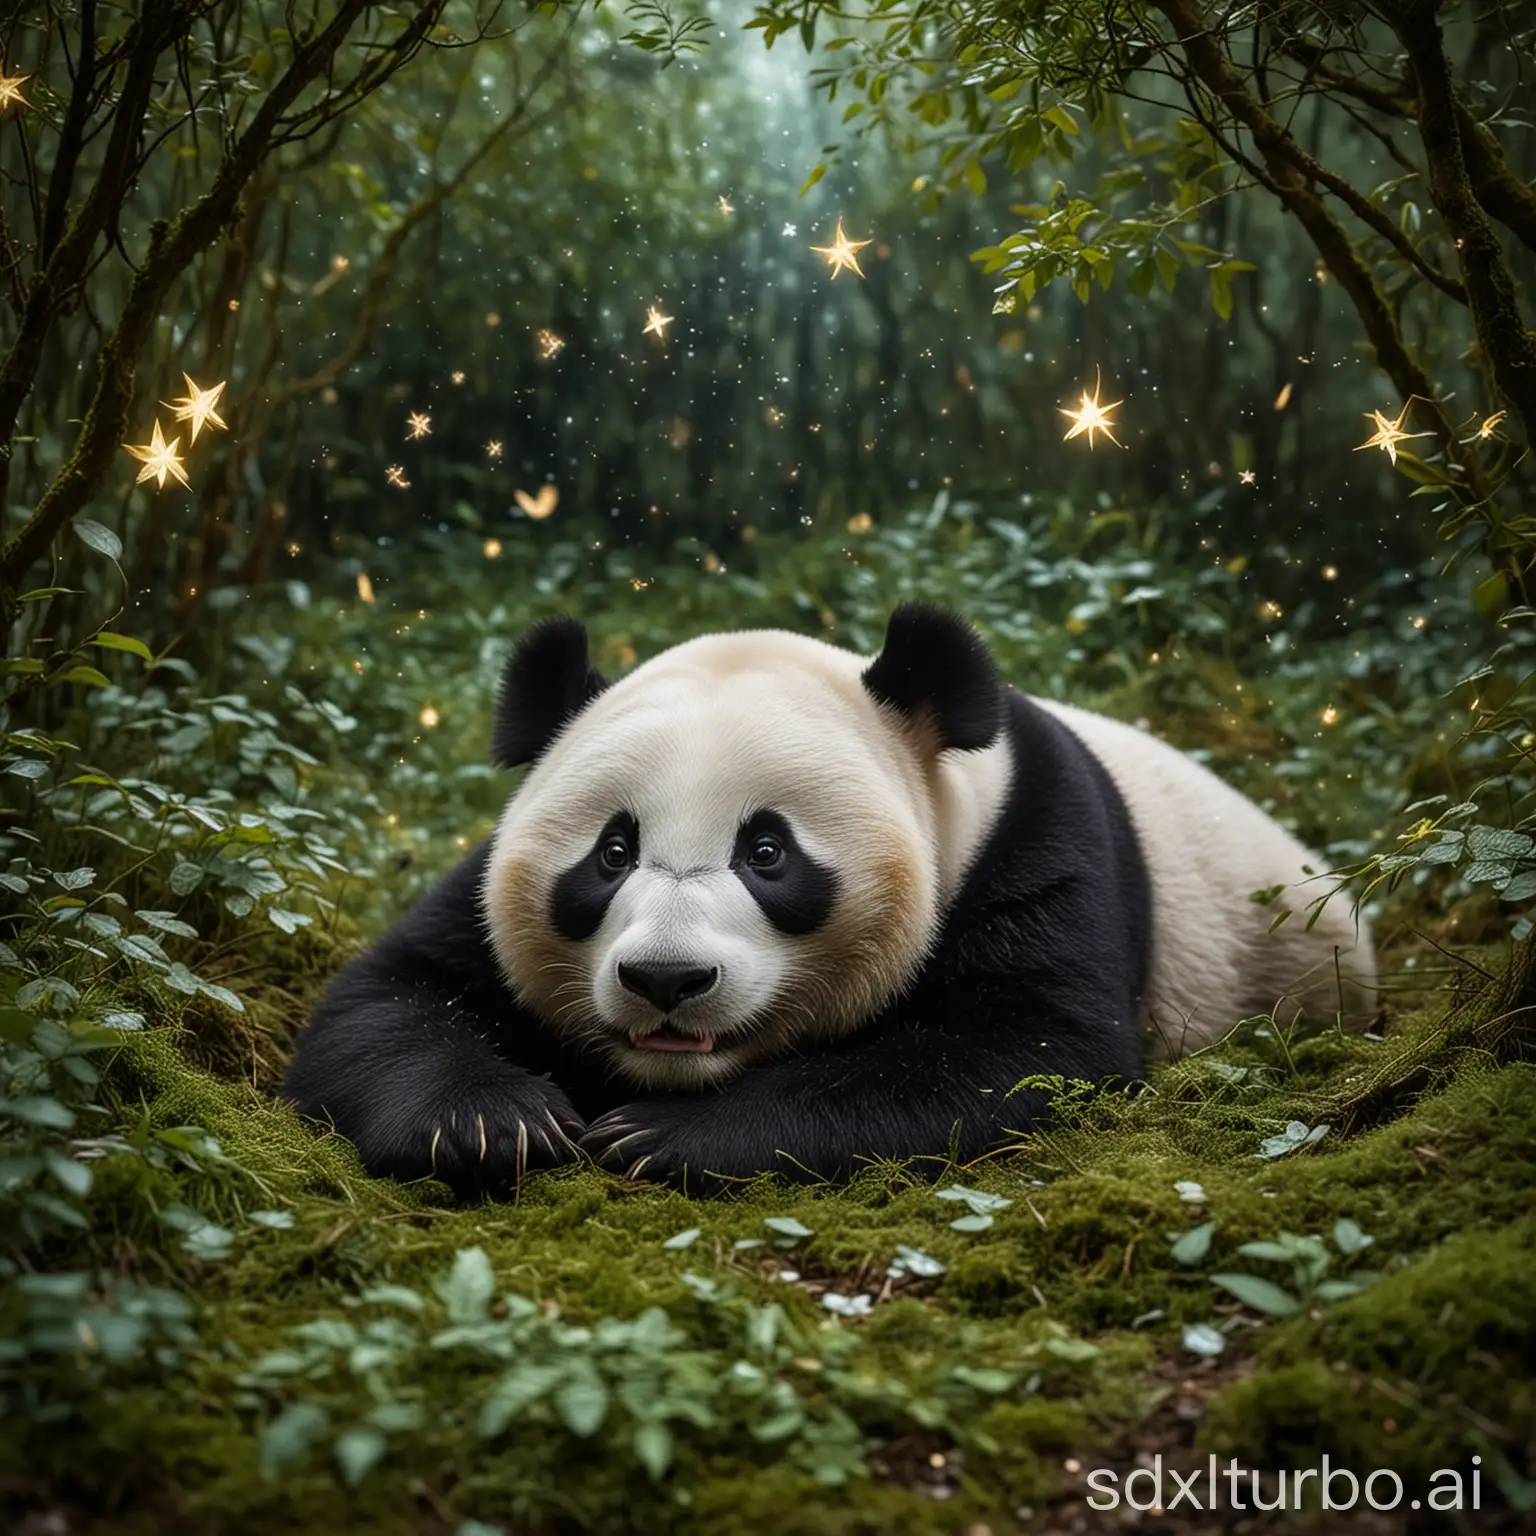 Unter einem Baldachin aus Blättern und Zweigen ruht der Panda friedlich auf einem moosbewachsenen Bett. Sein Schnarchen mischt sich mit dem leisen Rascheln der Blätter im Wind, während die Sterne über ihm wie Diamanten funkeln.